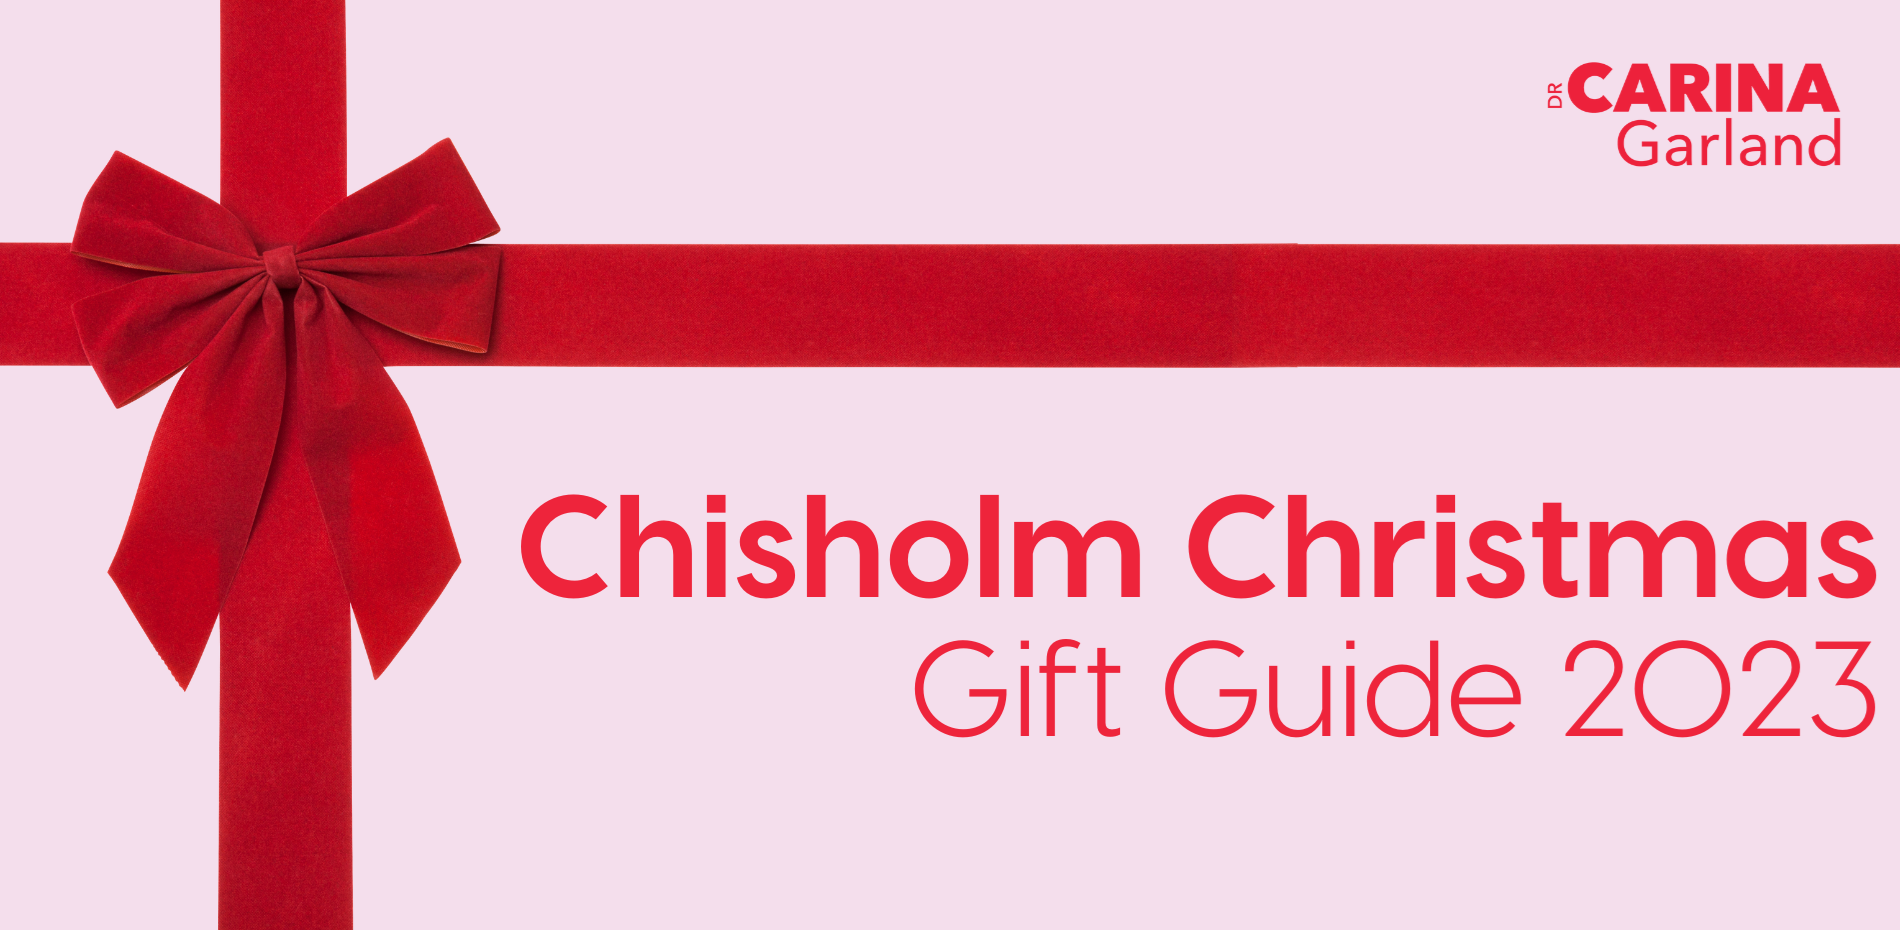 Chisholm Christmas Gift Guide 2023 Main Image